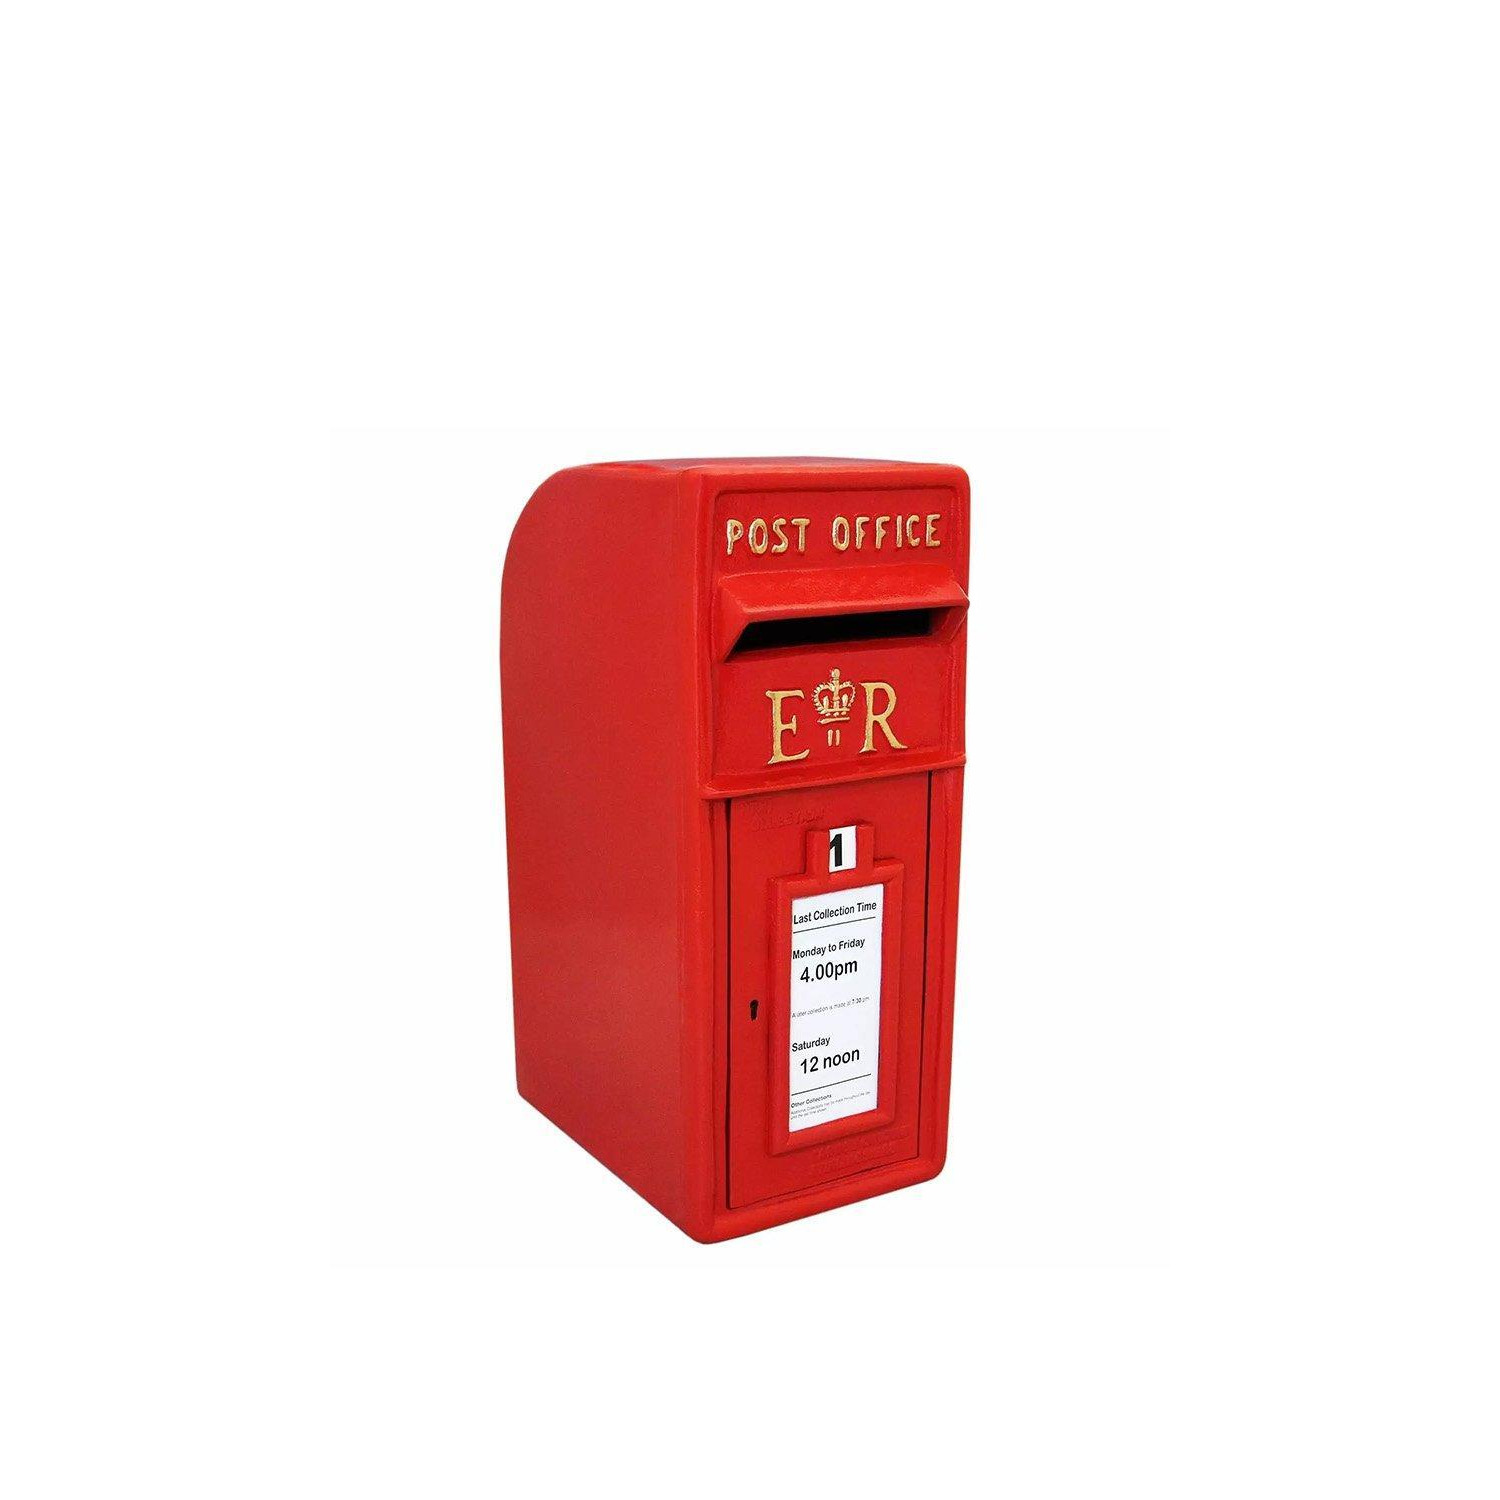 Red Royal Mail Post Box - image 1